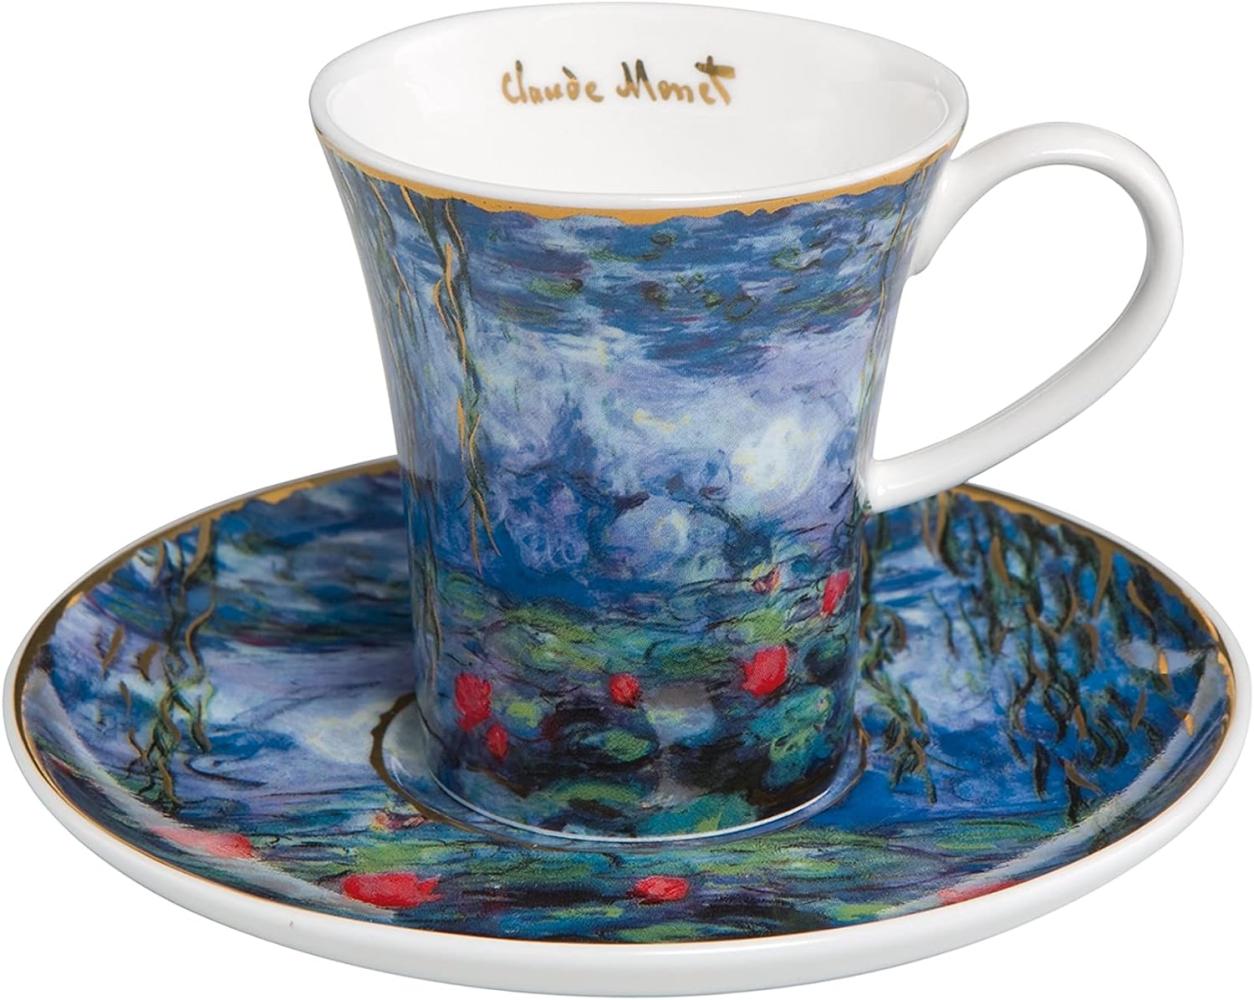 Goebel Artis Orbis Claude Monet Seerosen mit Weide - Espressotasse 67011651 Bild 1